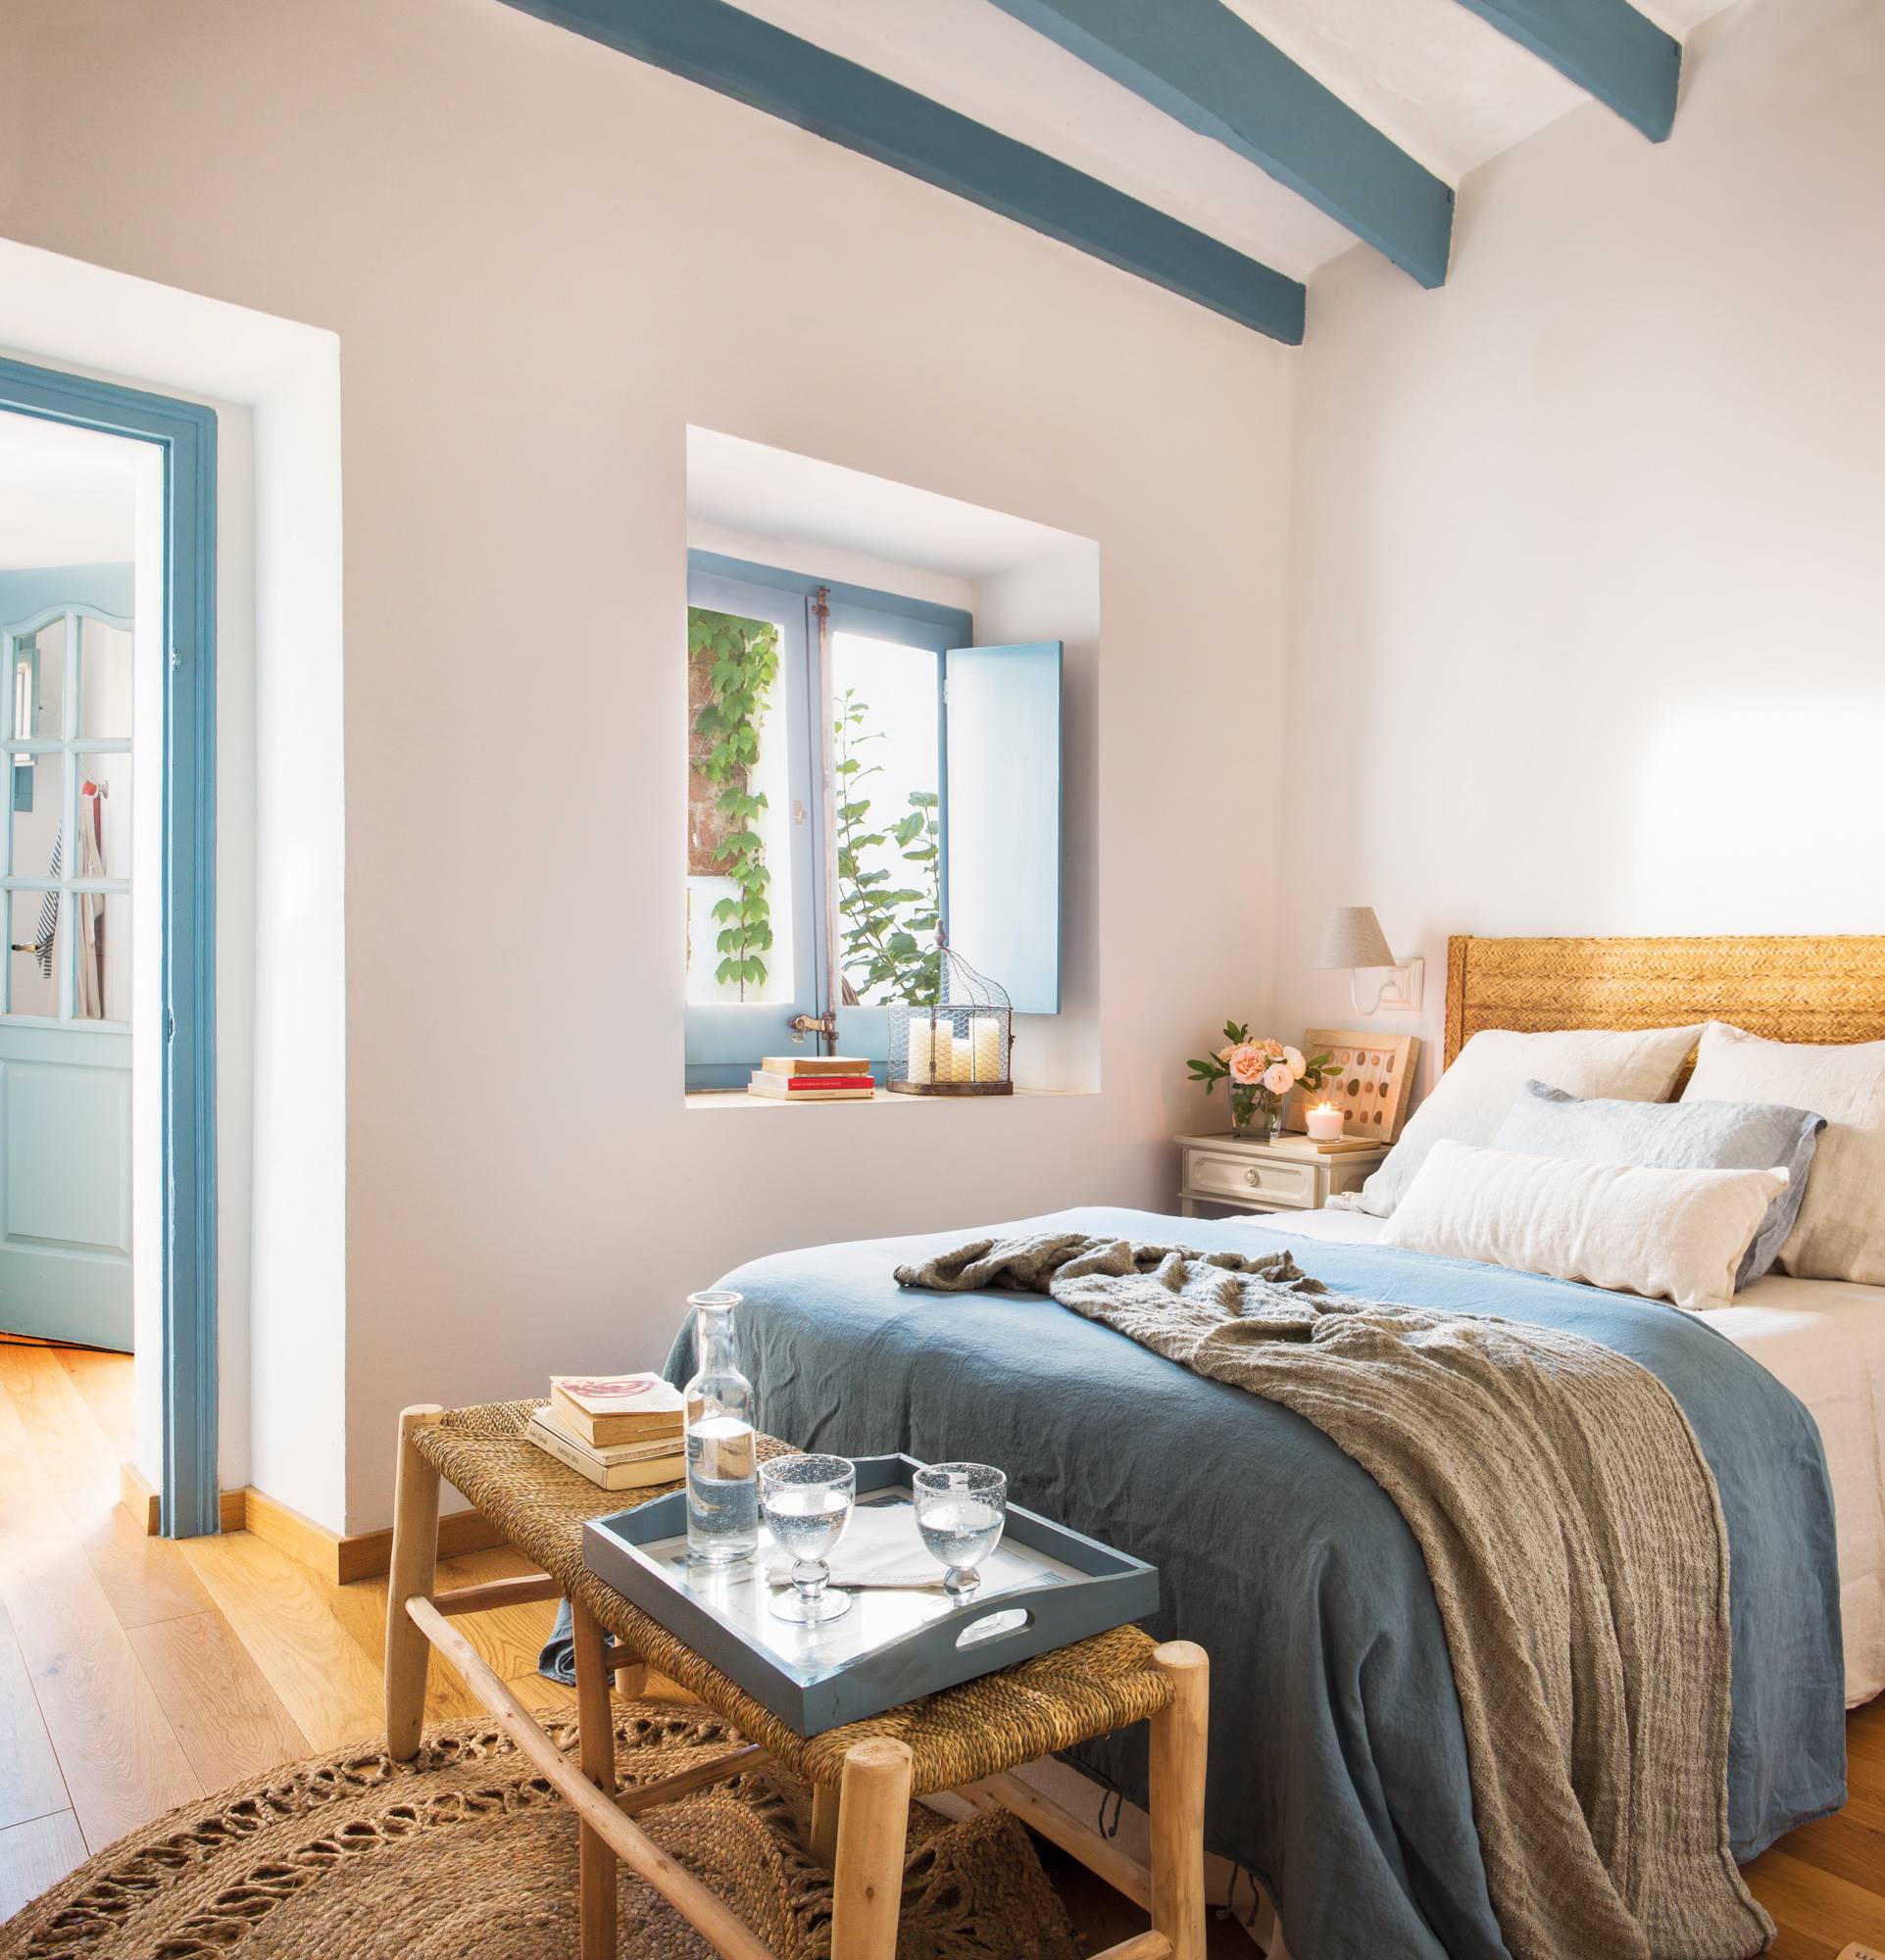 Dormitorio de primavera con paredes blancas y vigas, carpintería y ropa de cama en azul.